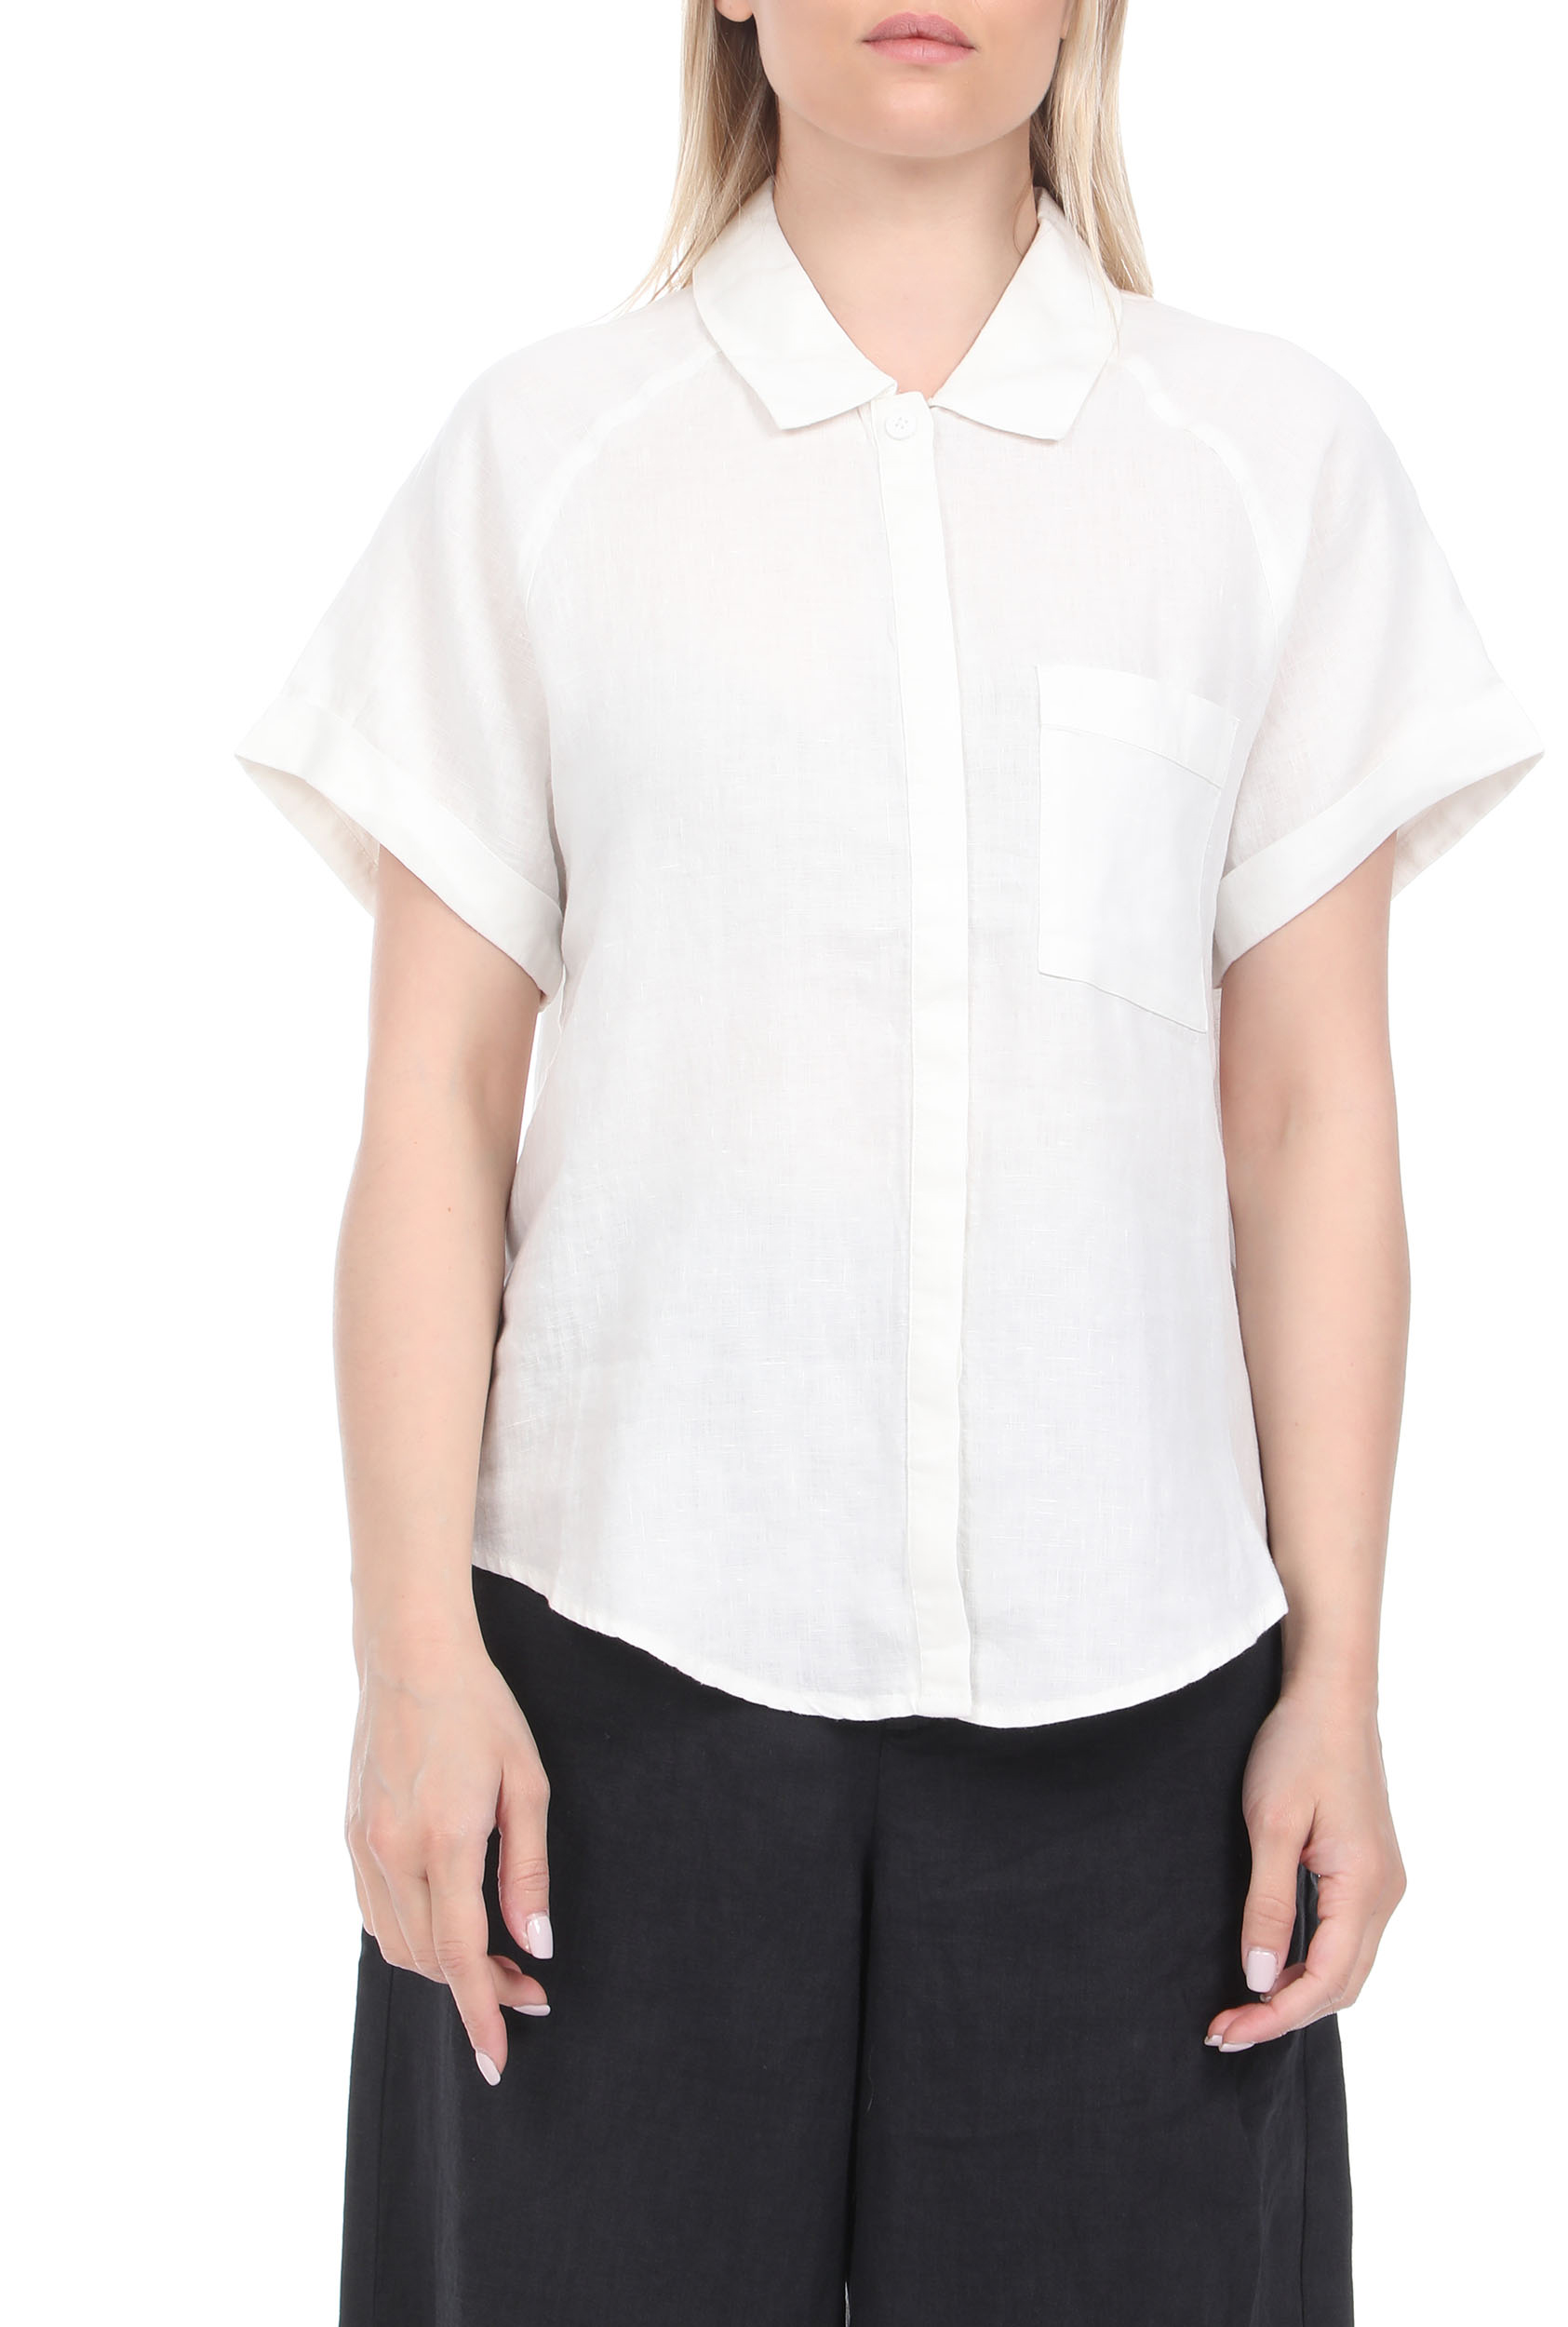 ECOALF – Γυναικείο λινό πουκάμισο ECOALF LYCHEE λευκό 1811420.0-0092